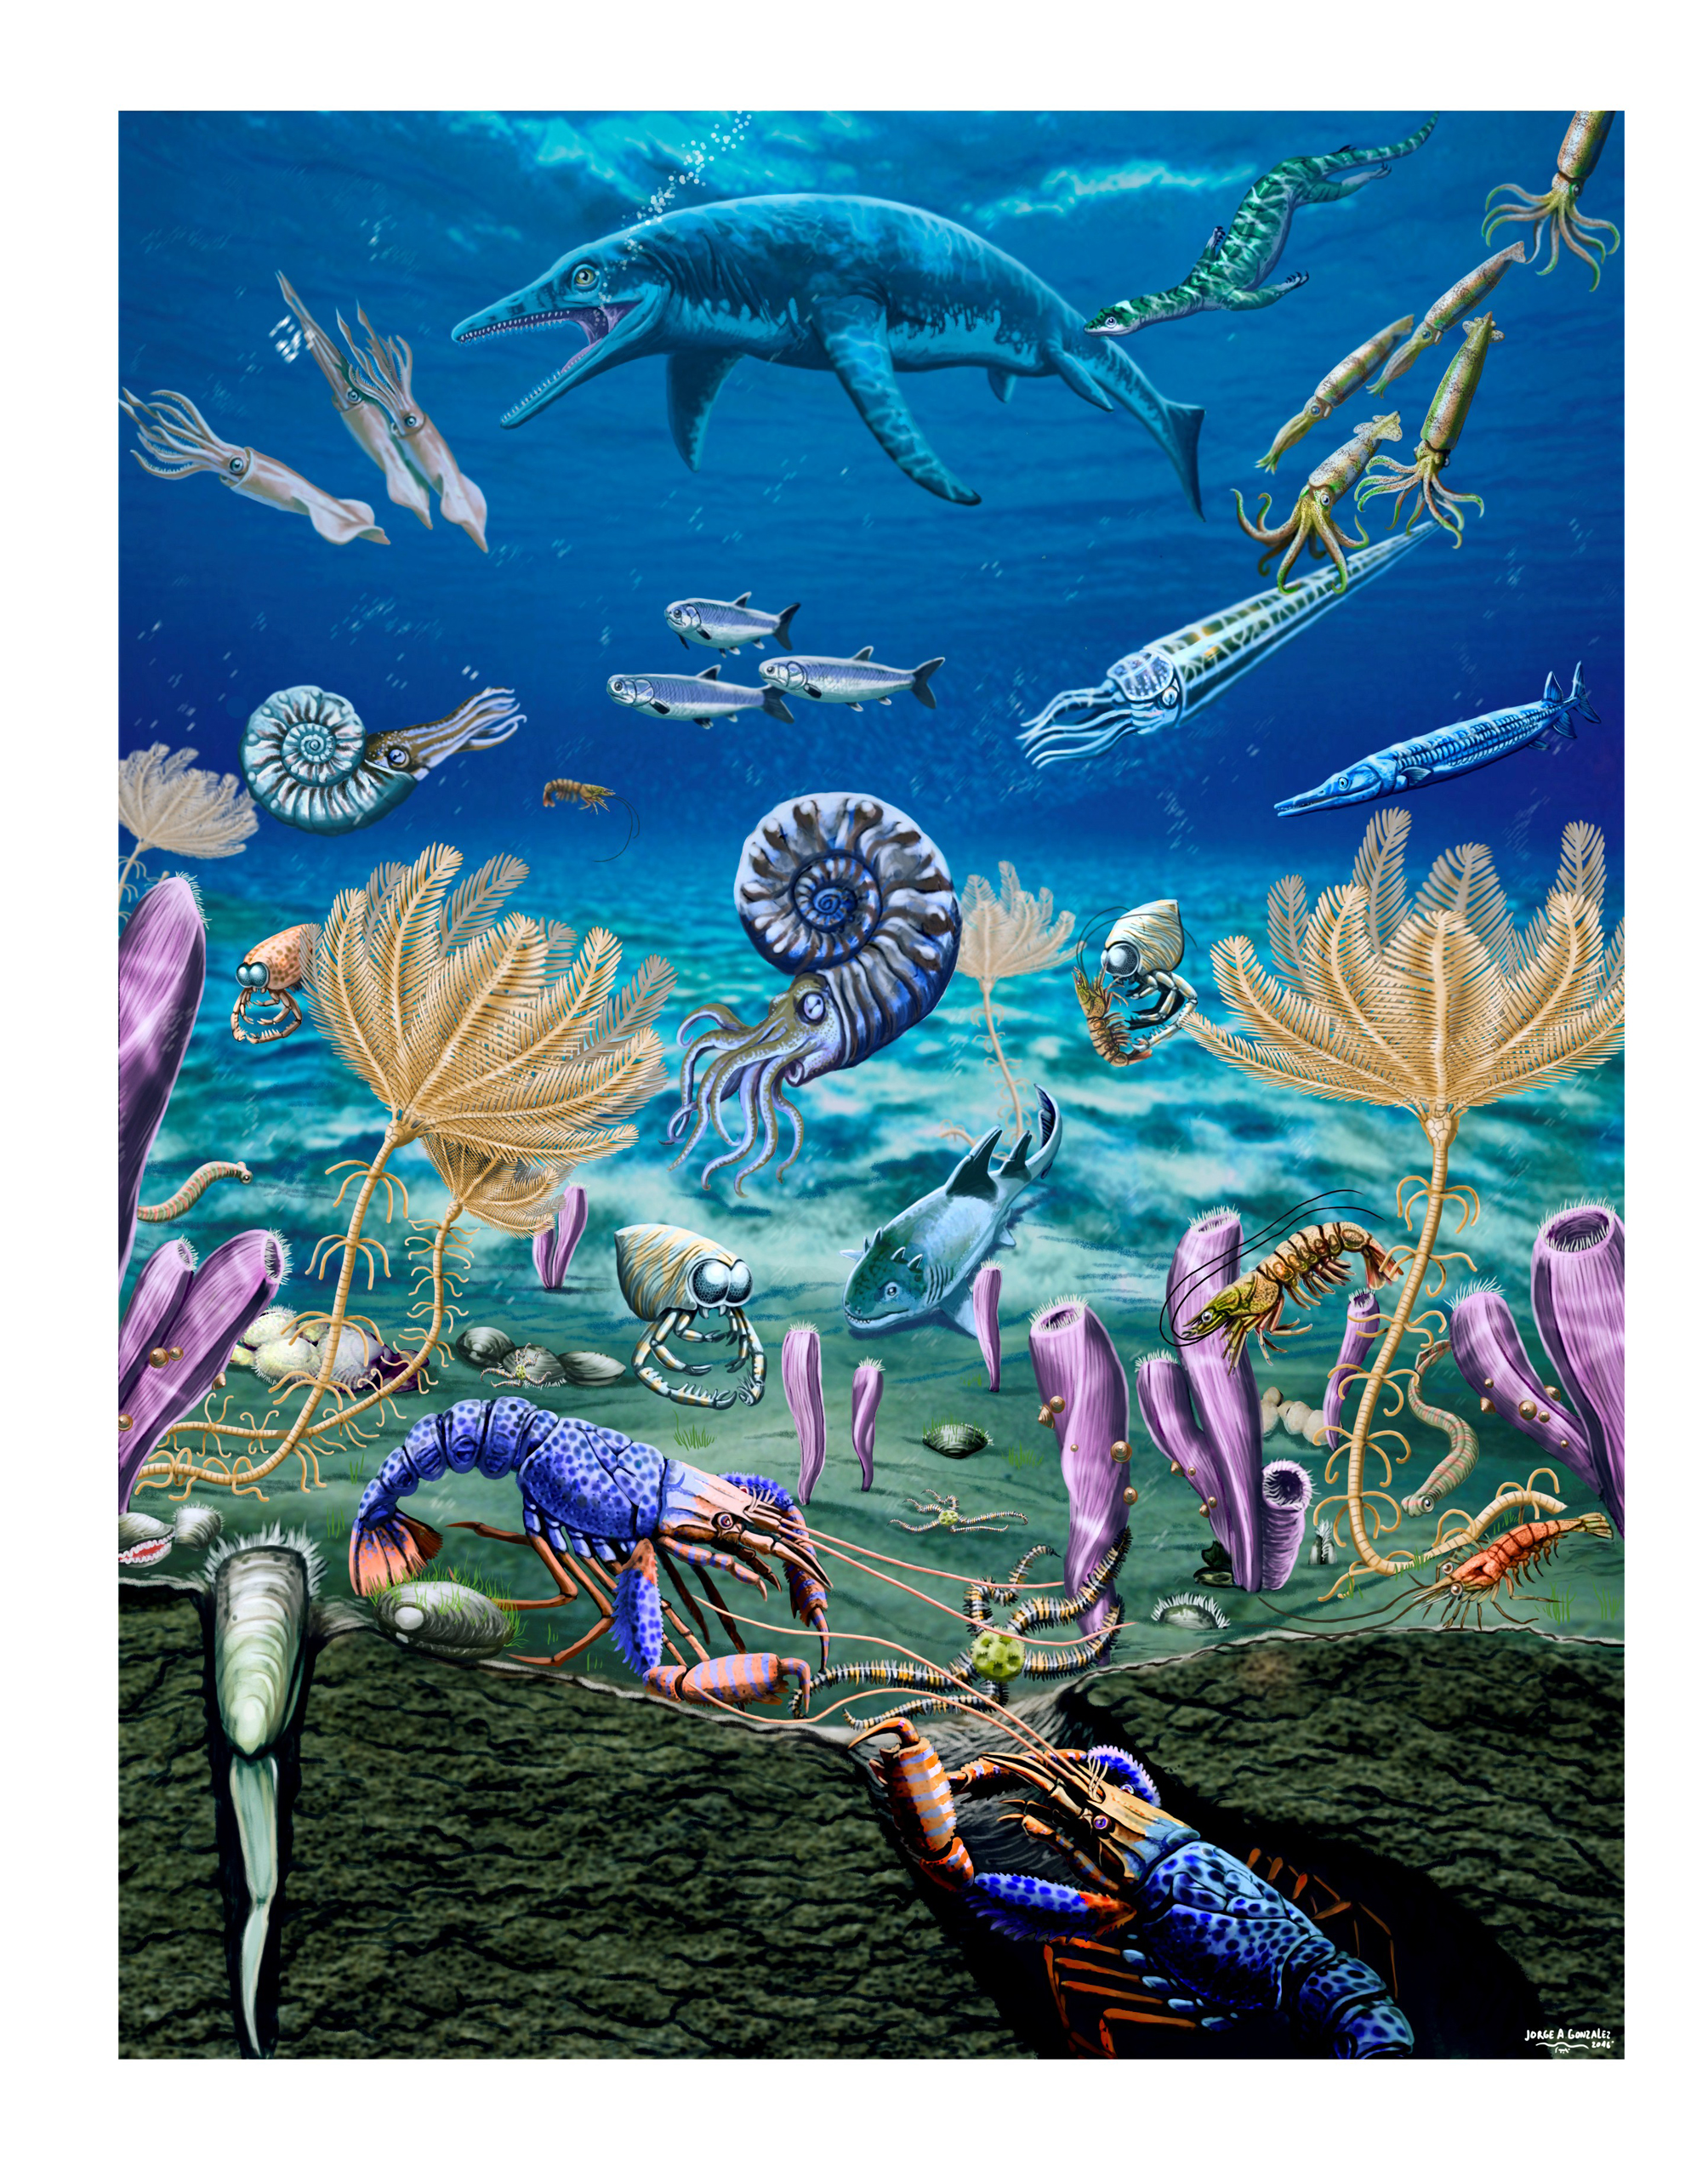 Море живое существо. Триасовый Кембрийский. Триасовый период морская жизнь. Море Триасового периода. Океан Триасового периода.